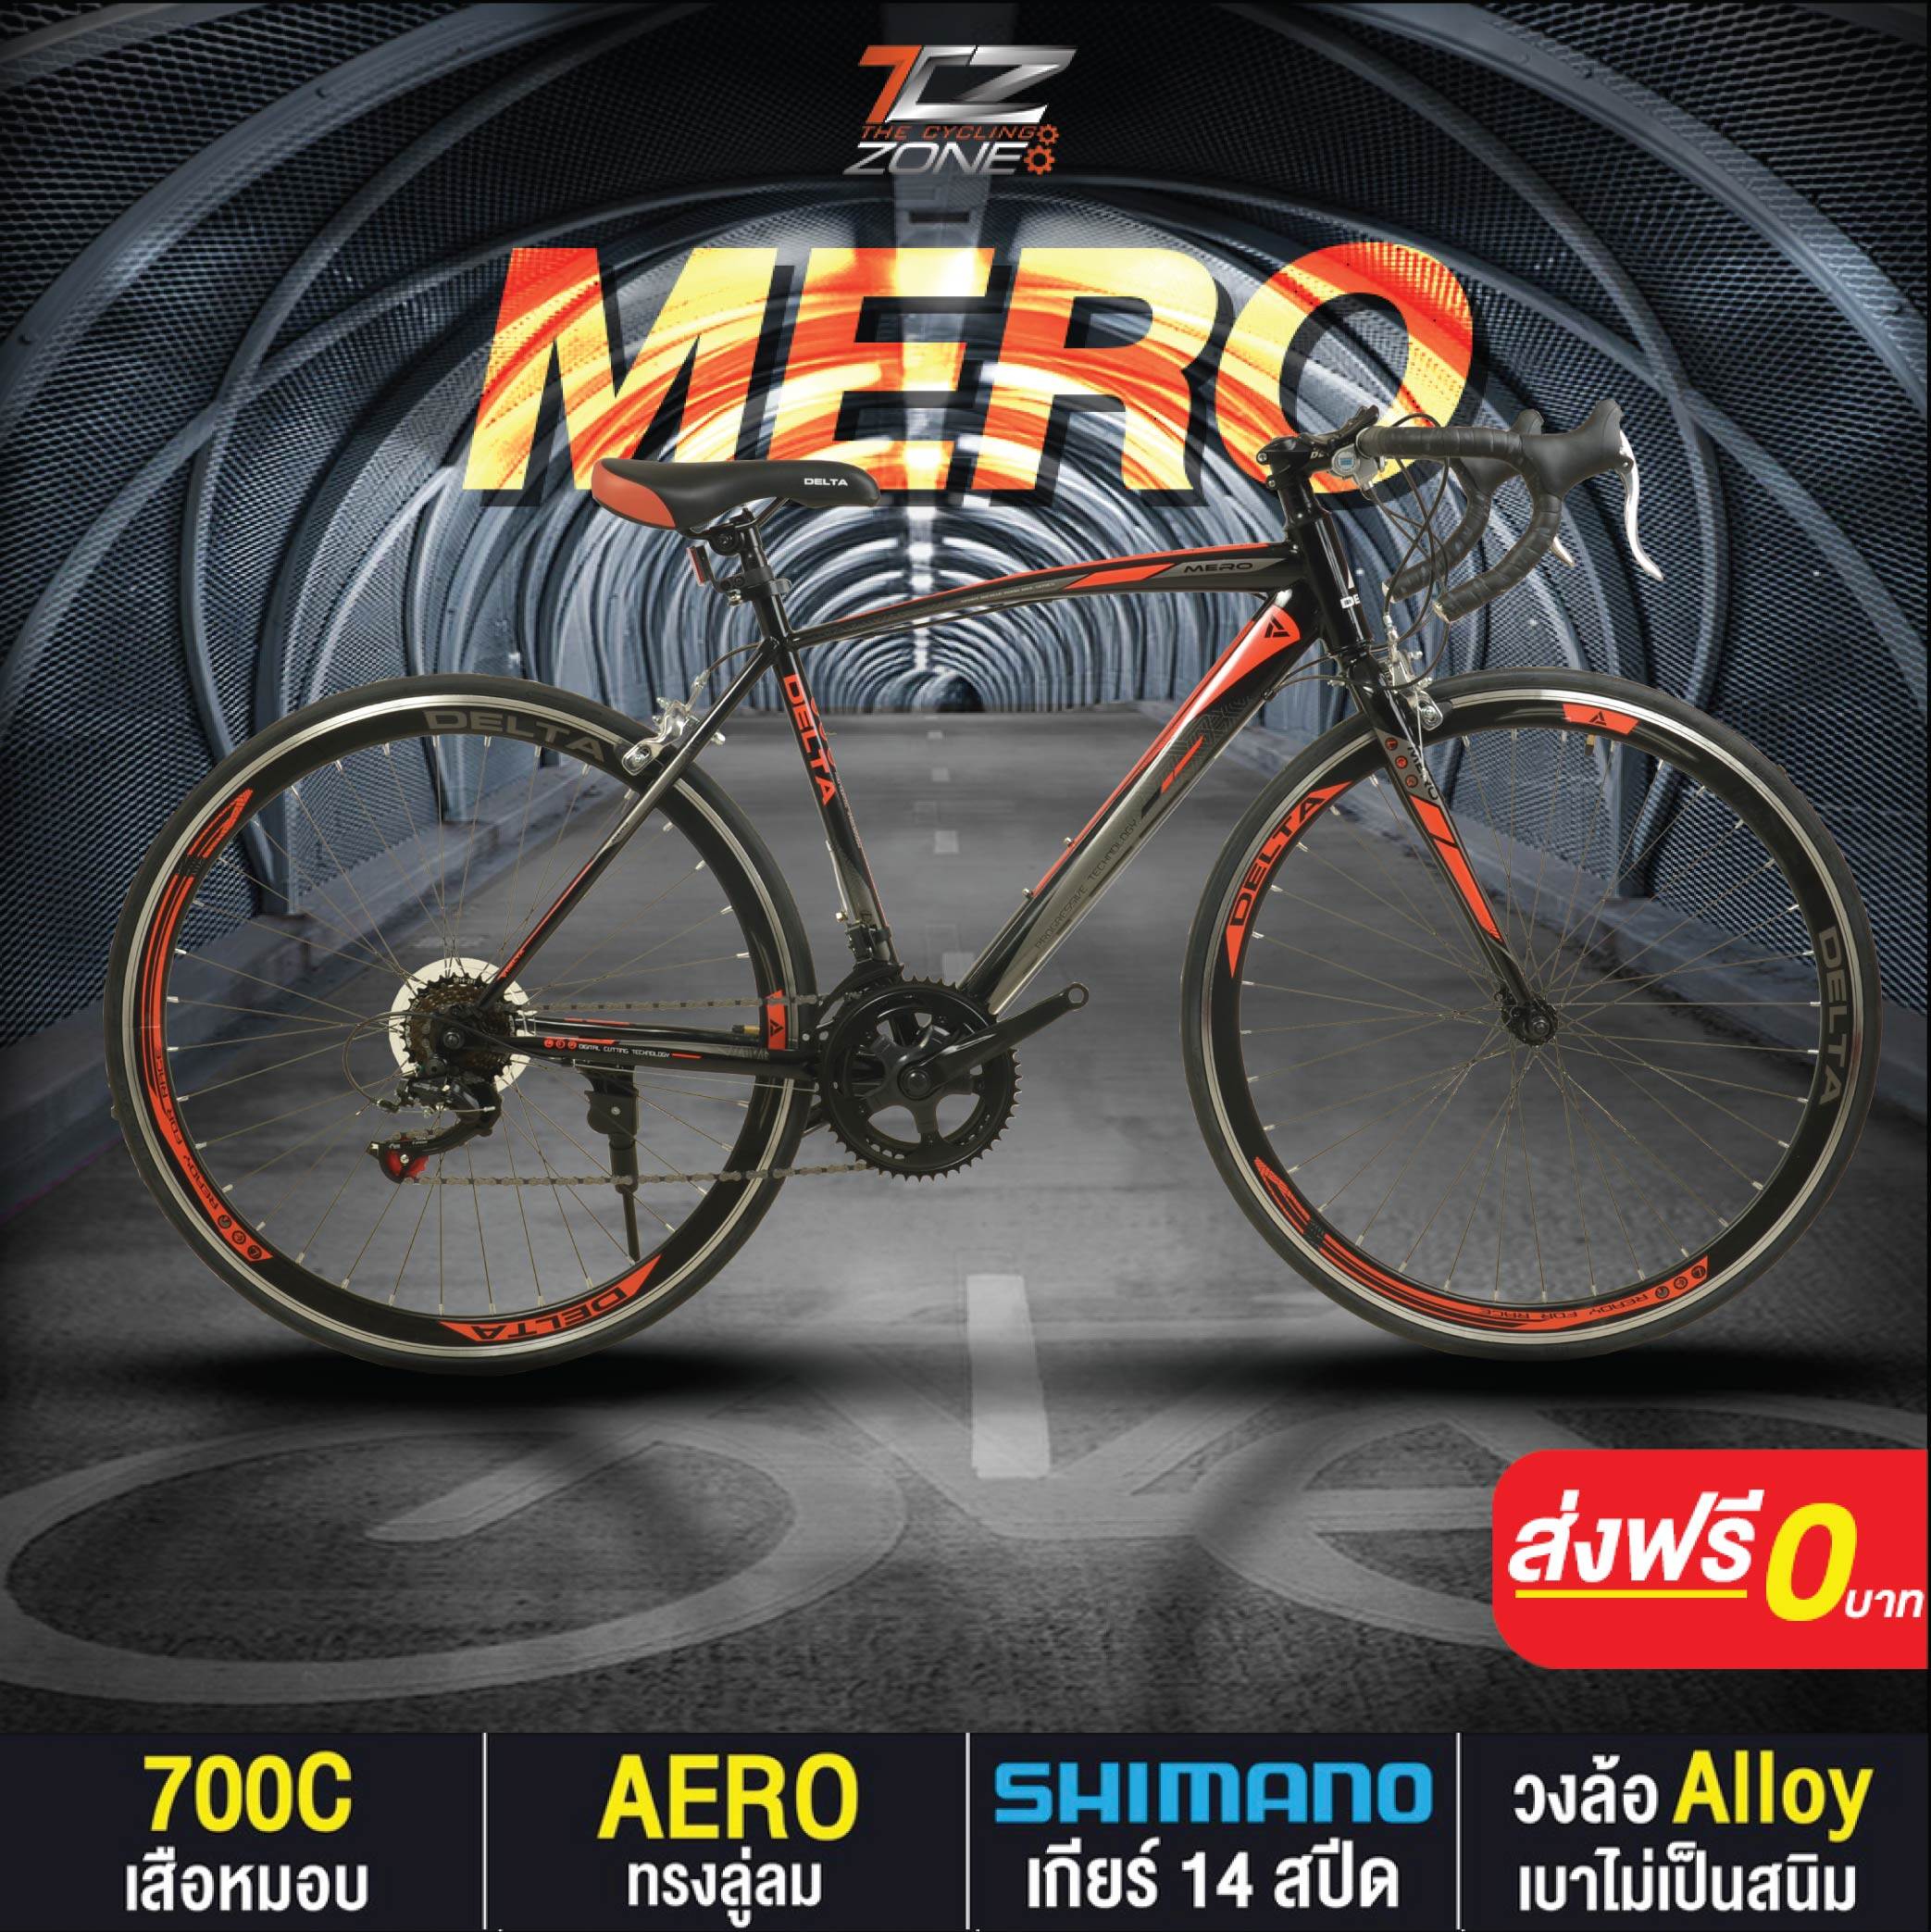 จักรยานเสือหมอบ 700C / DELTA เกียร์ SHIMANO 14 สปีด / ไซส์ 49 / รุ่น MERO สีส้ม